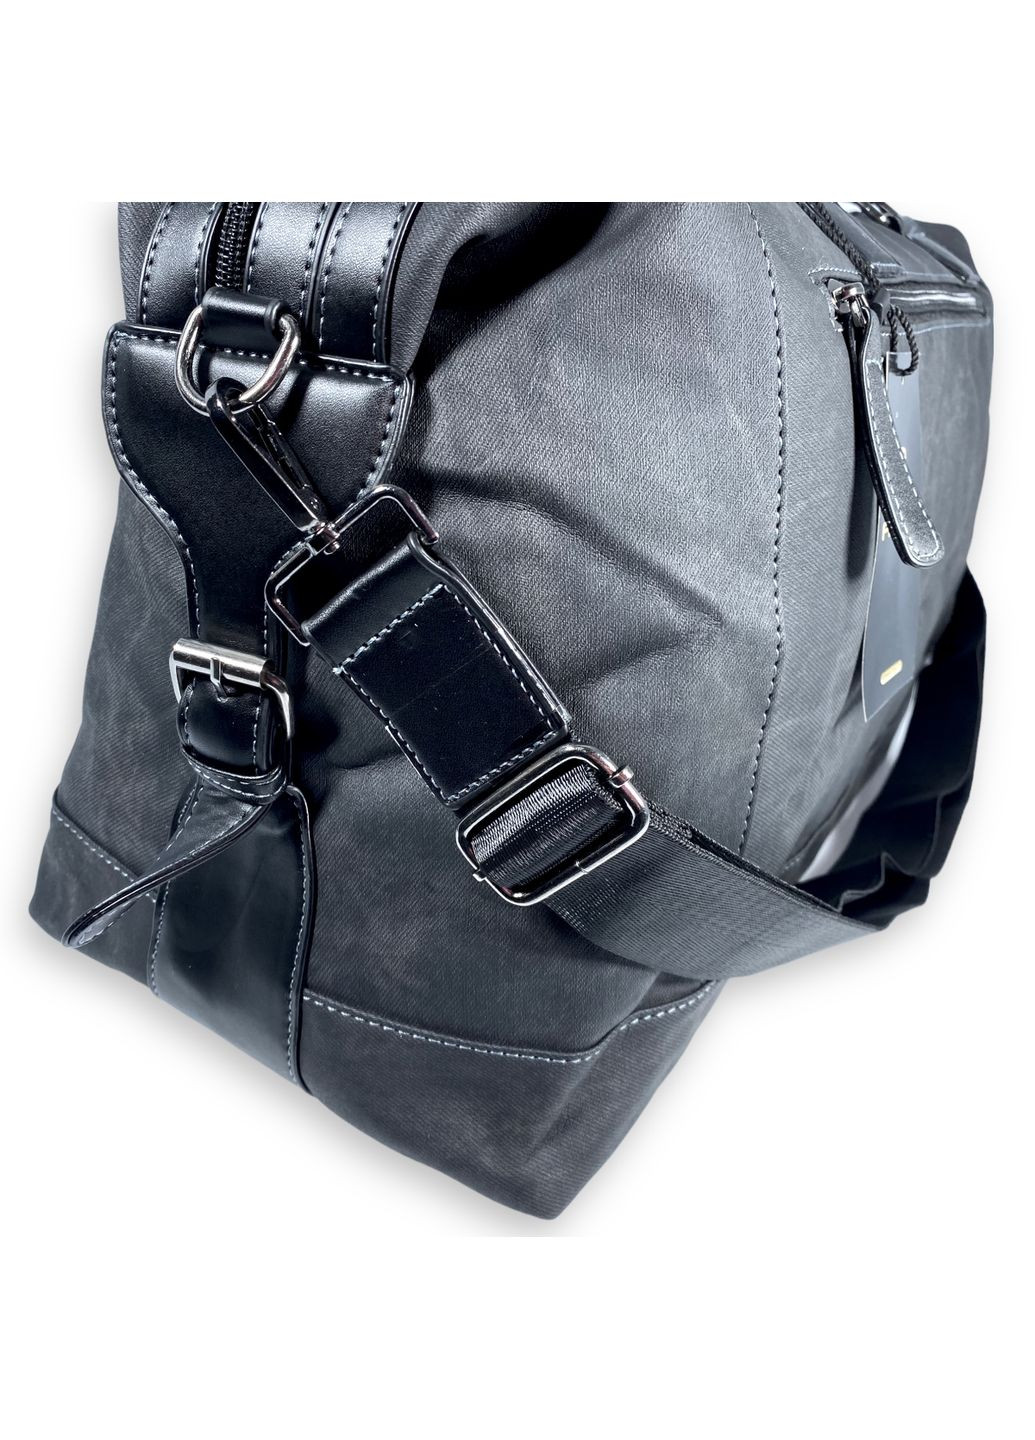 Дорожная сумка из экокожи 2 отдела внутренние карманы съемный ремень размер: 50*30*20 см черная Filippini (285814818)